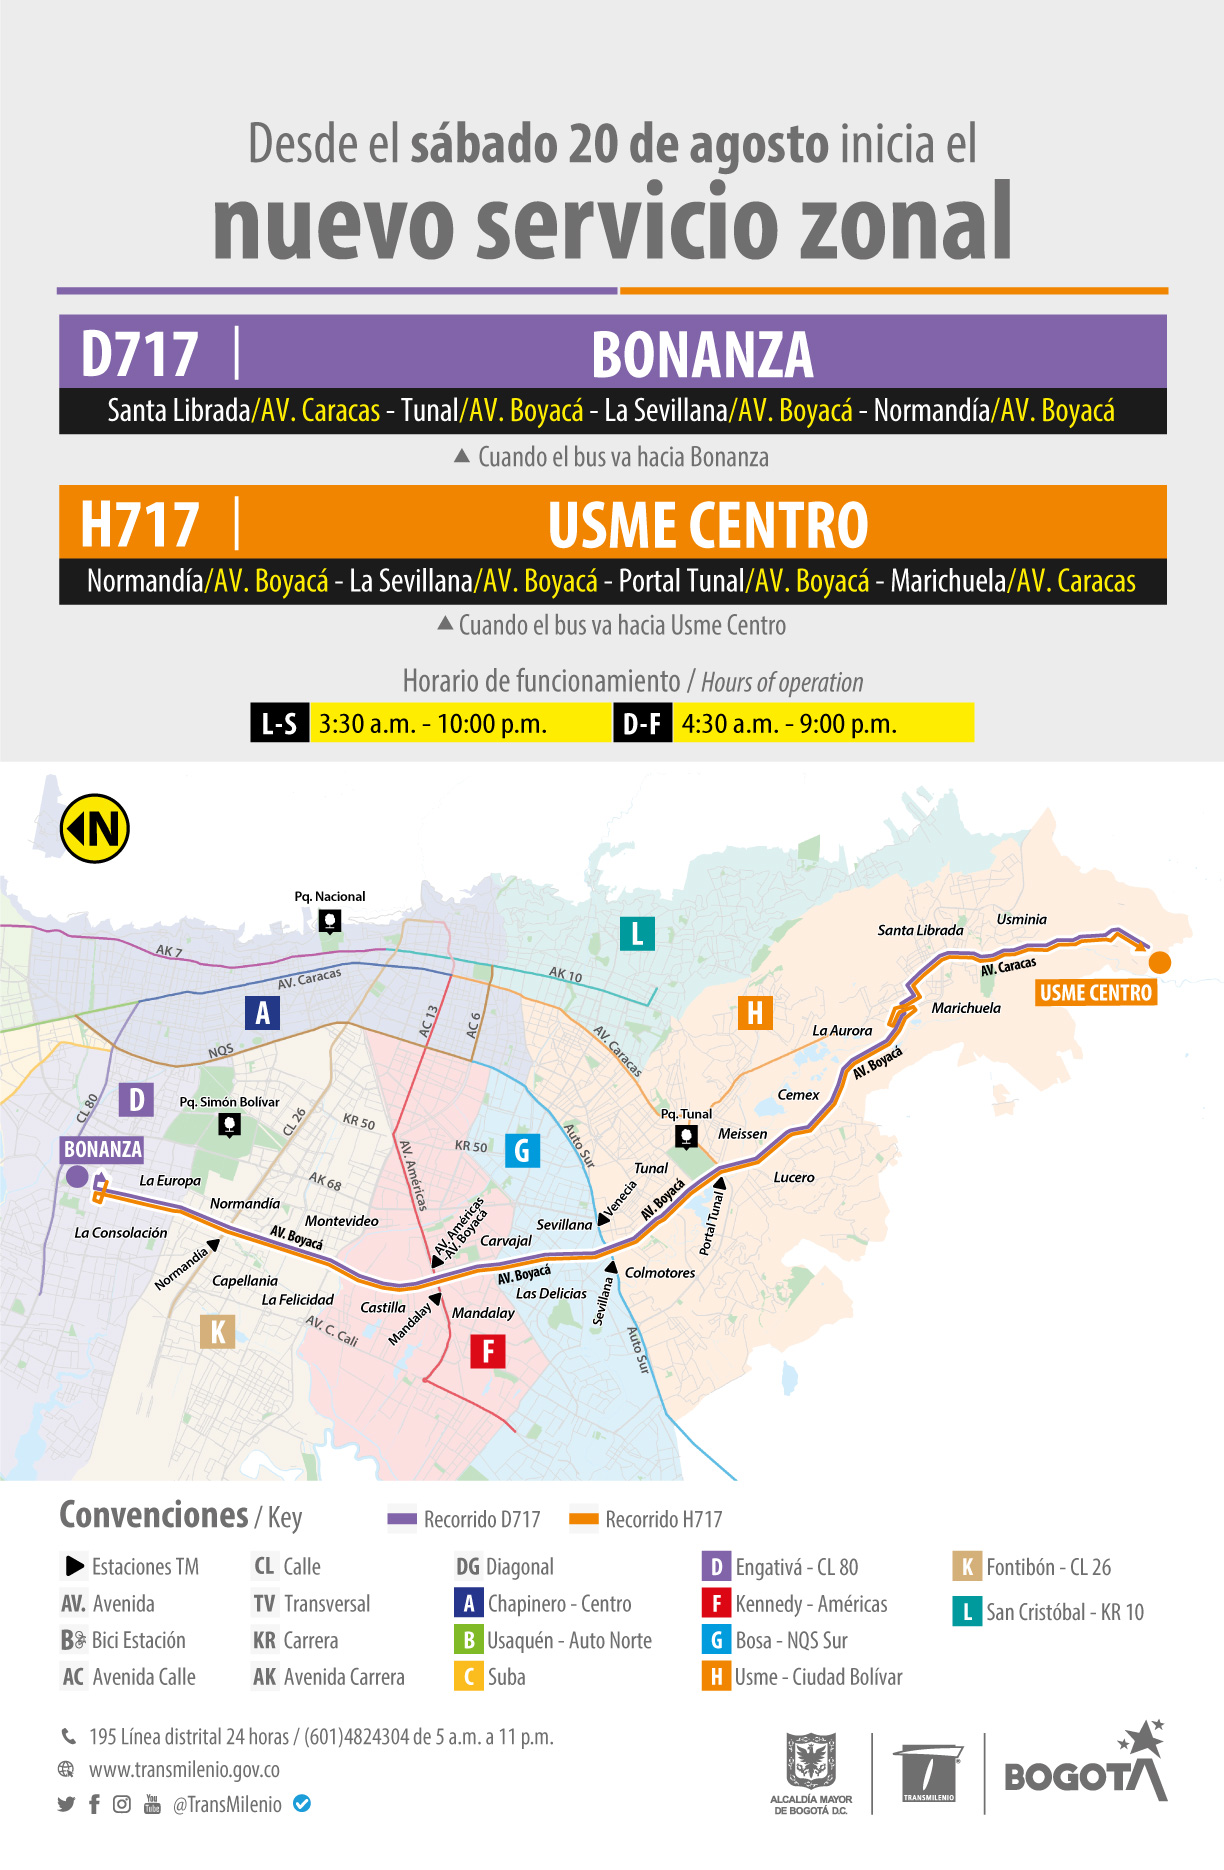 Nueva ruta zonal D717 Bonanza - H717 Usme Centro